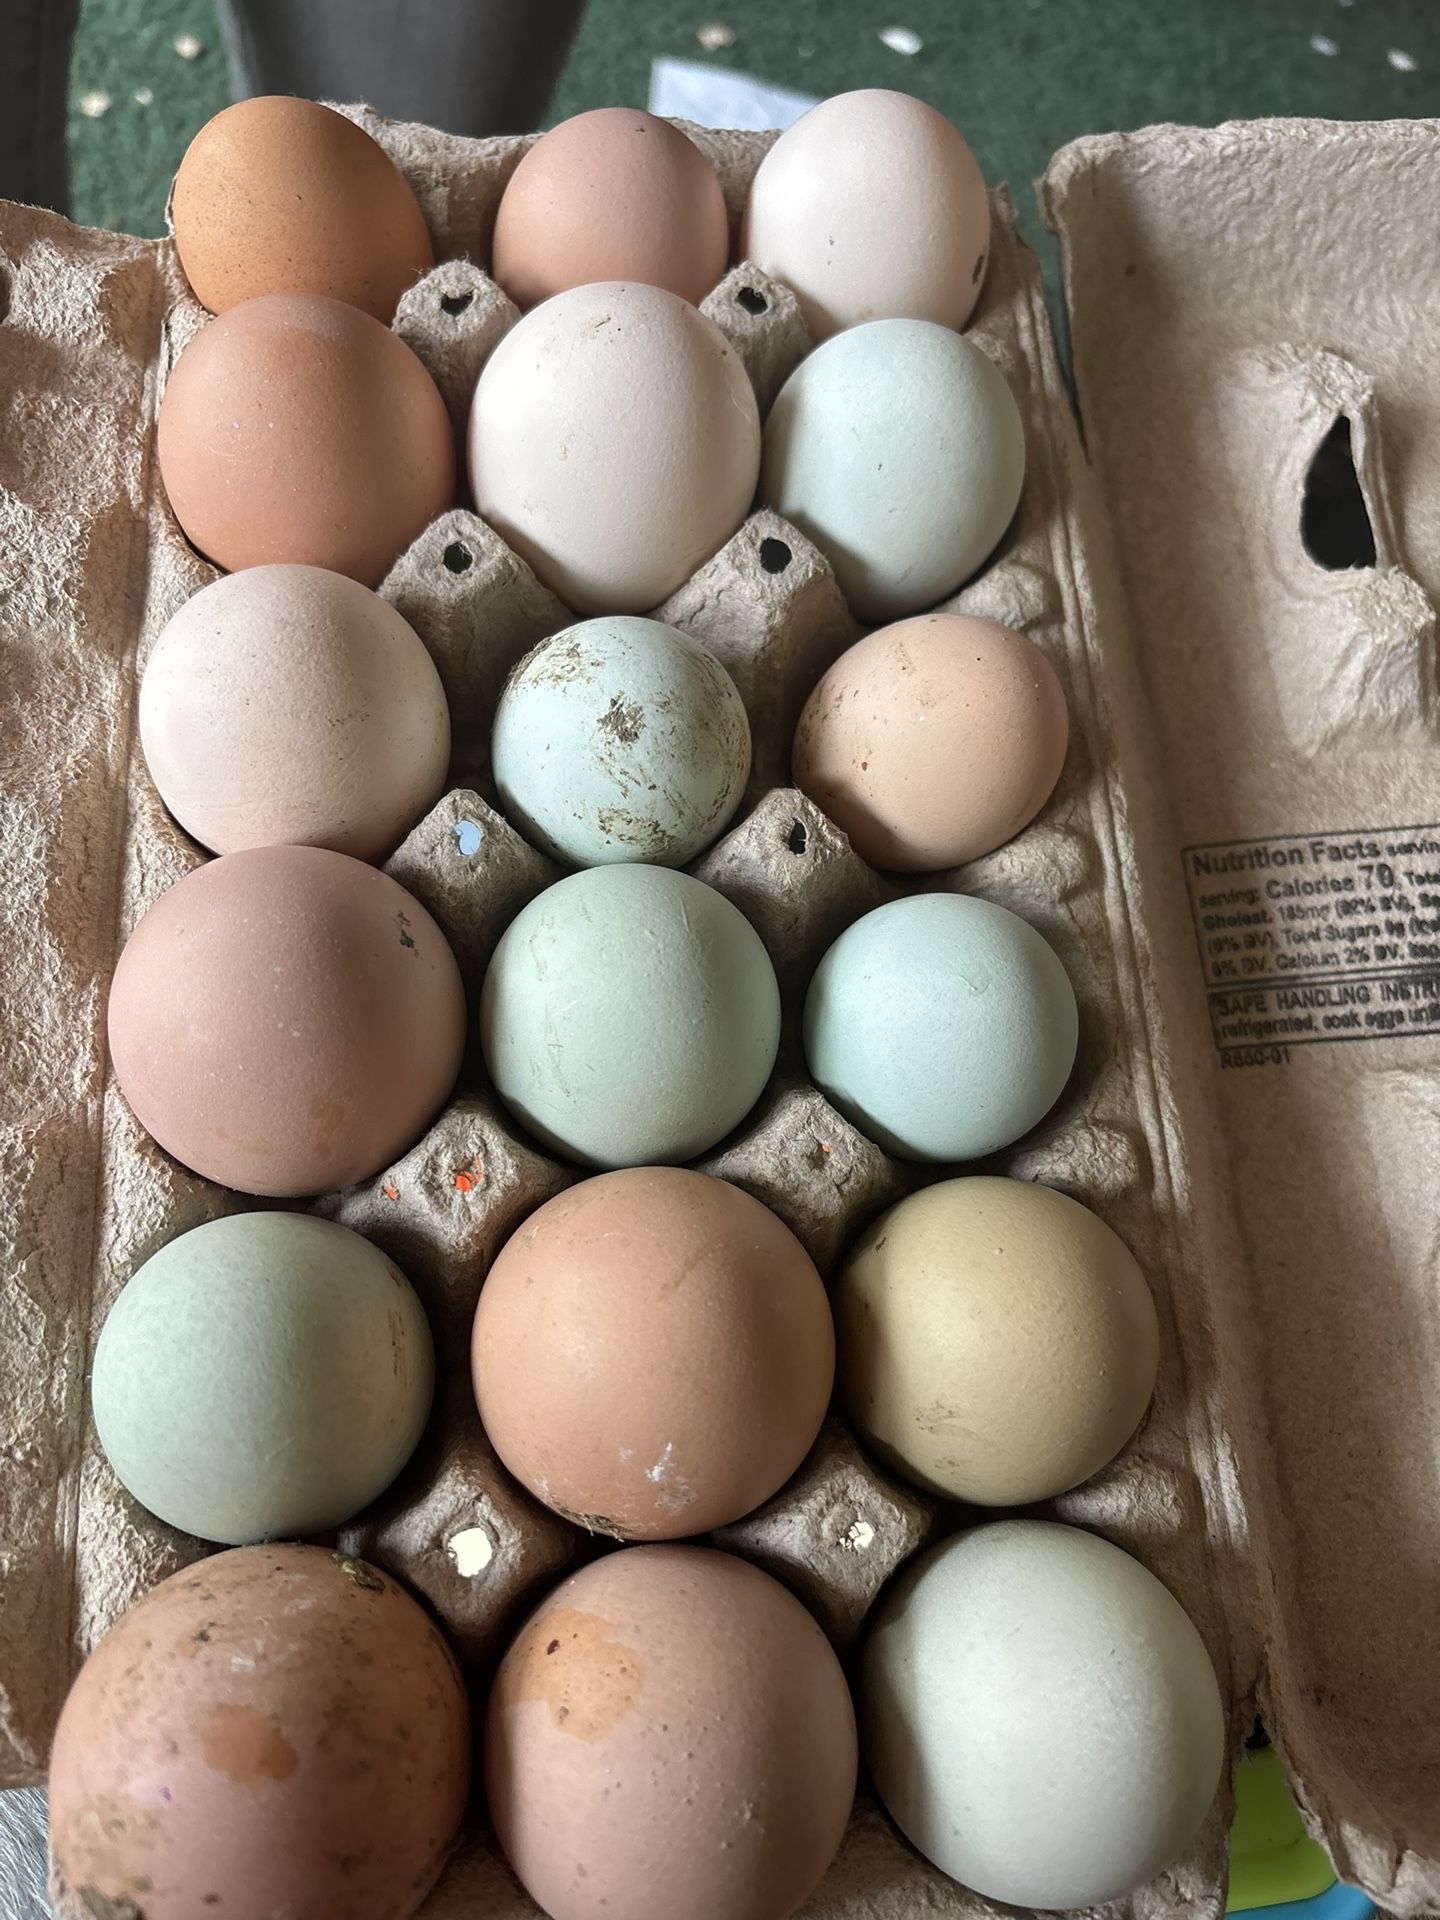 Farm Fresh Eggs For Sale 